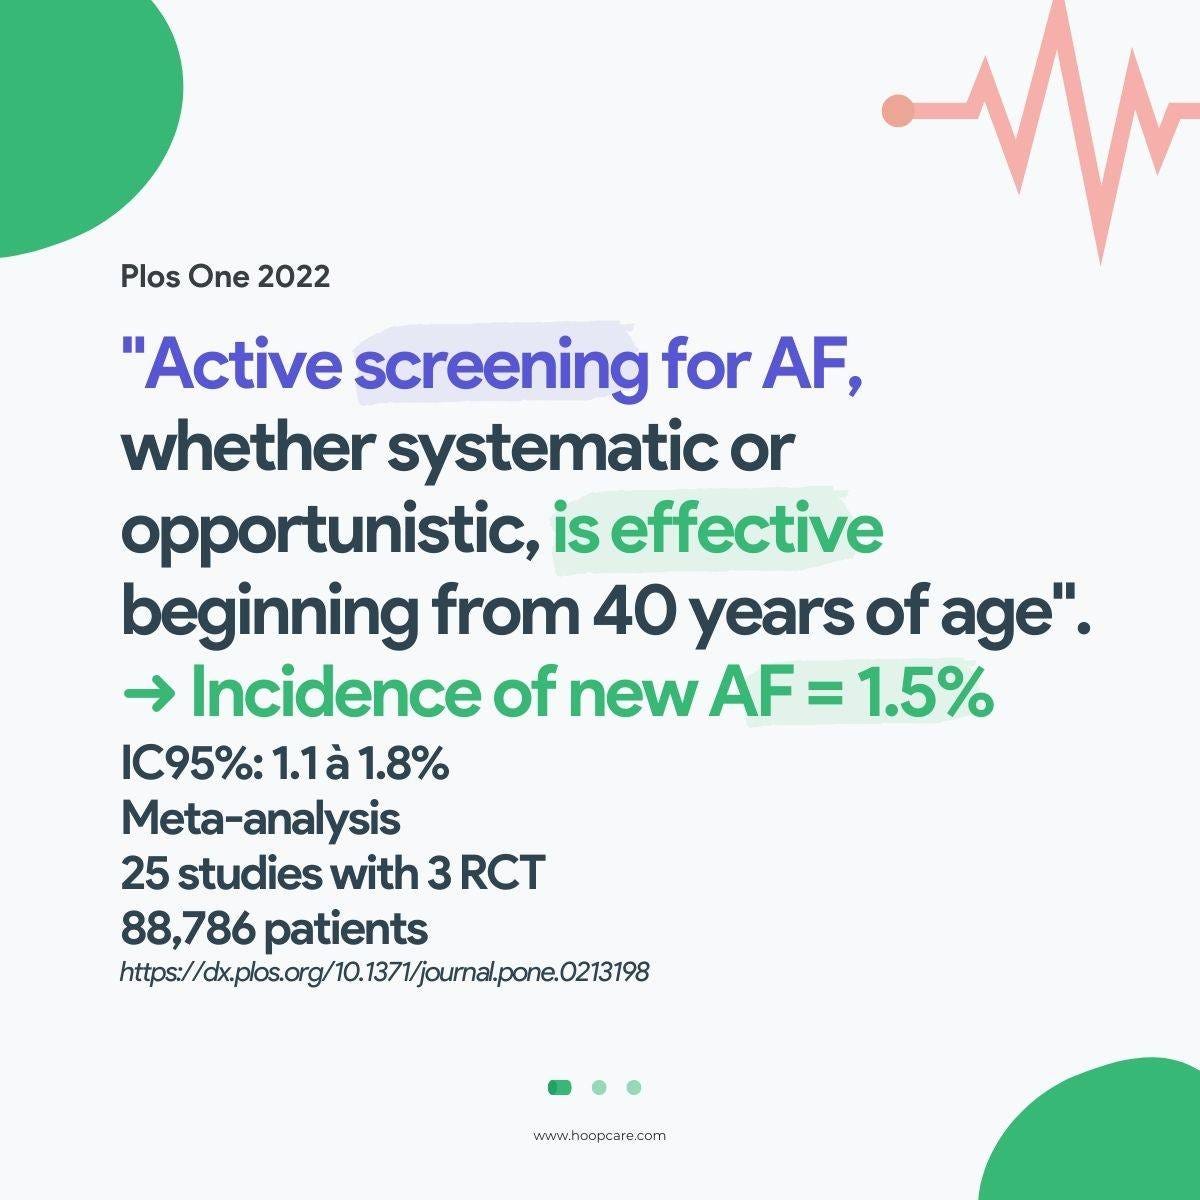 AF Plos One study image results 2022